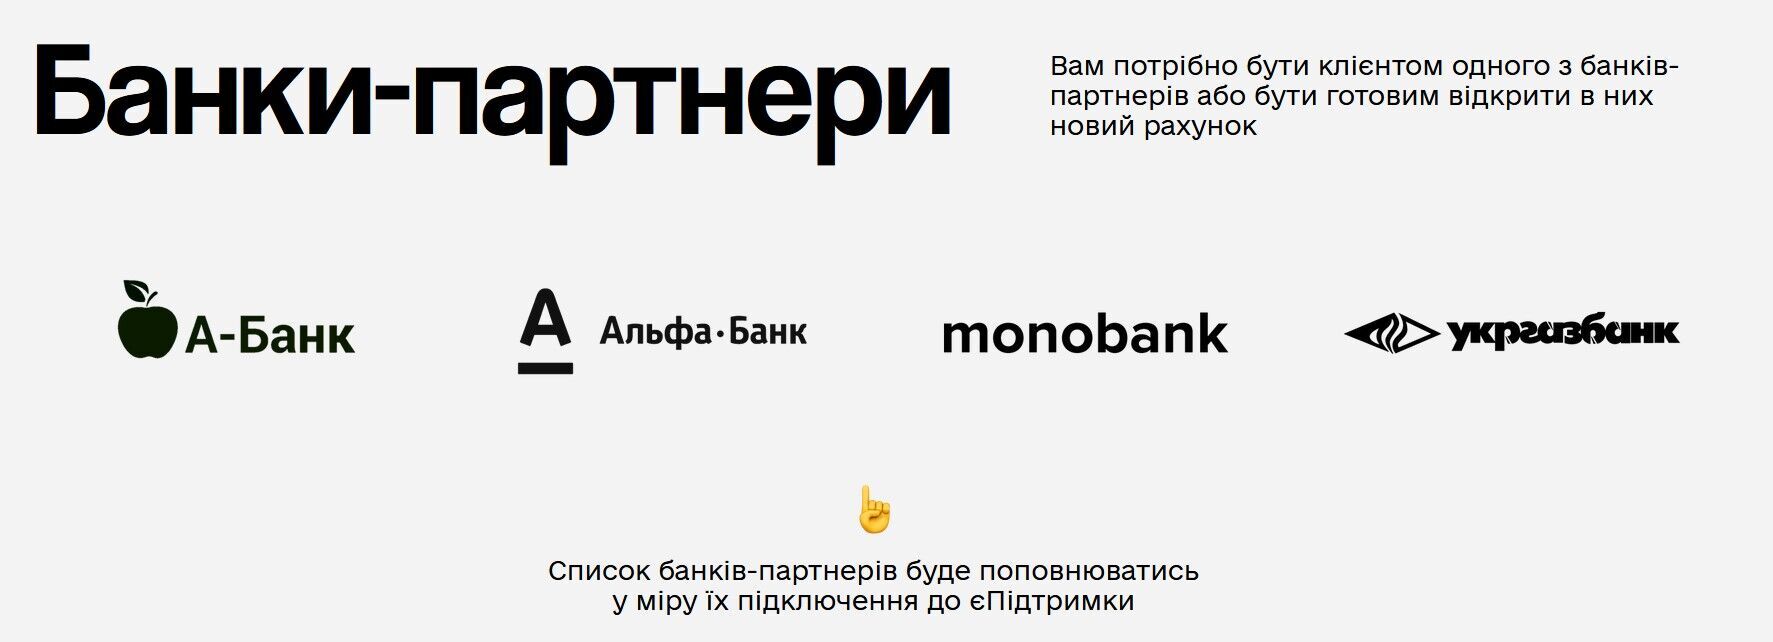 Monobank є партнером програми "єПідтримка"